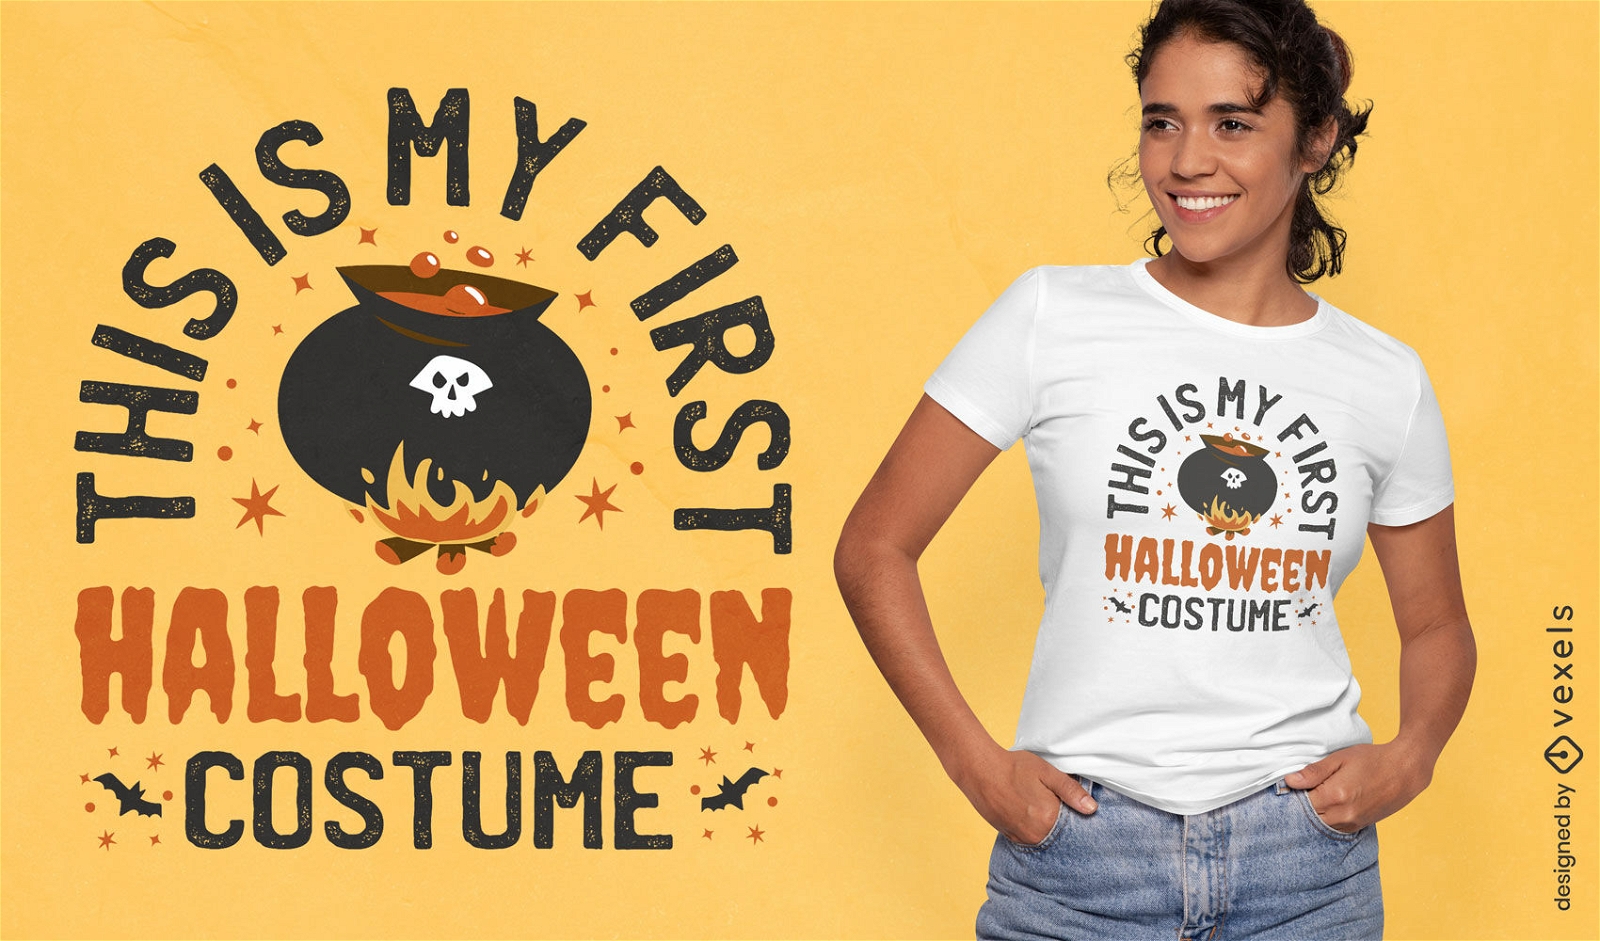 Halloween-Gebr?u-Kost?m-T-Shirt-Design